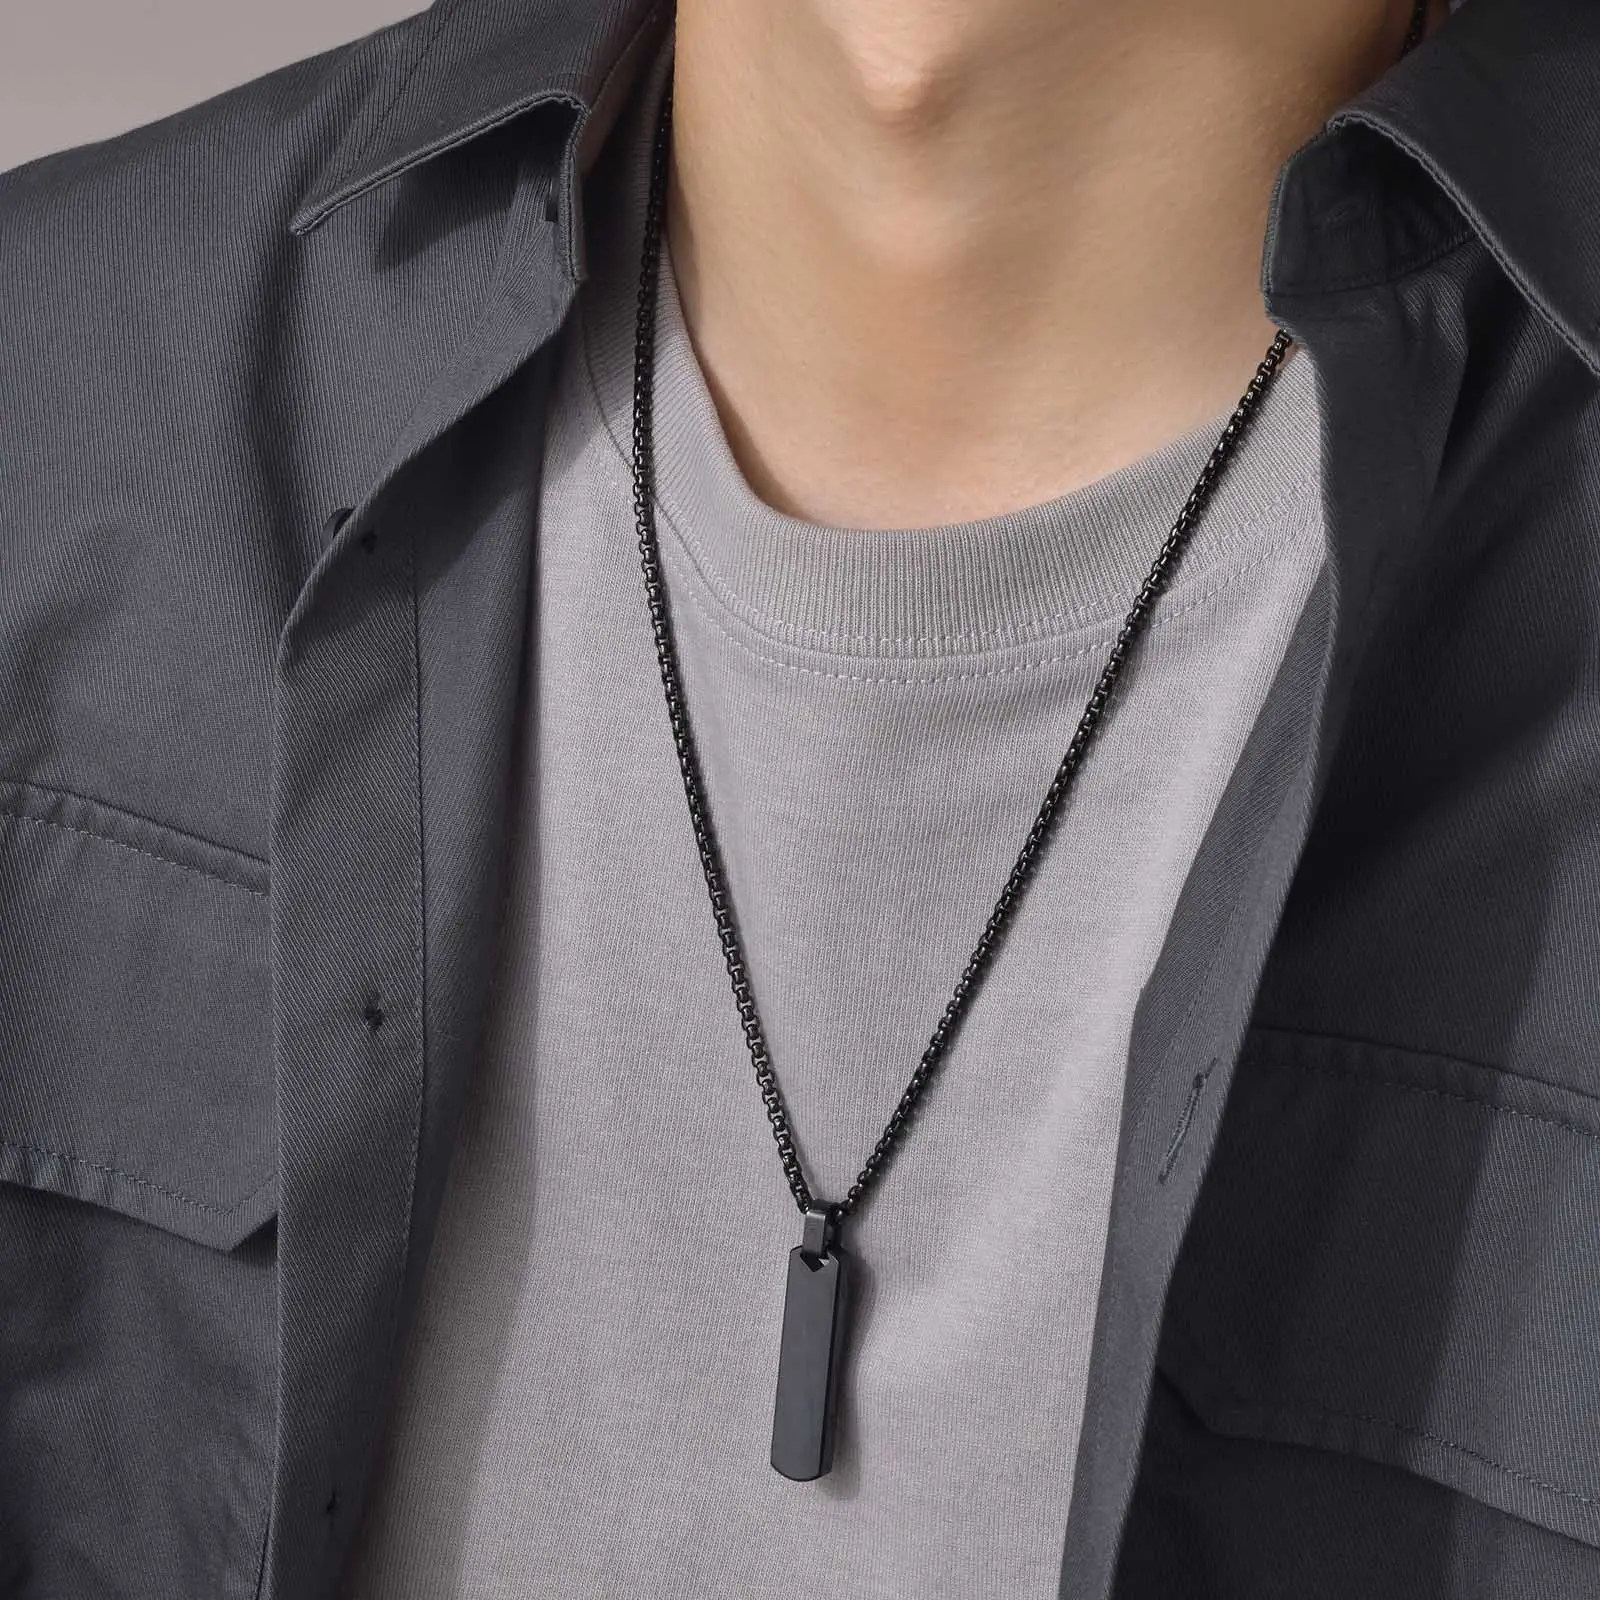 Gioielli vendita calda semplice ciondolo in acciaio inox tridimensionale rettangolare collana geometrica da uomo in accessori moda